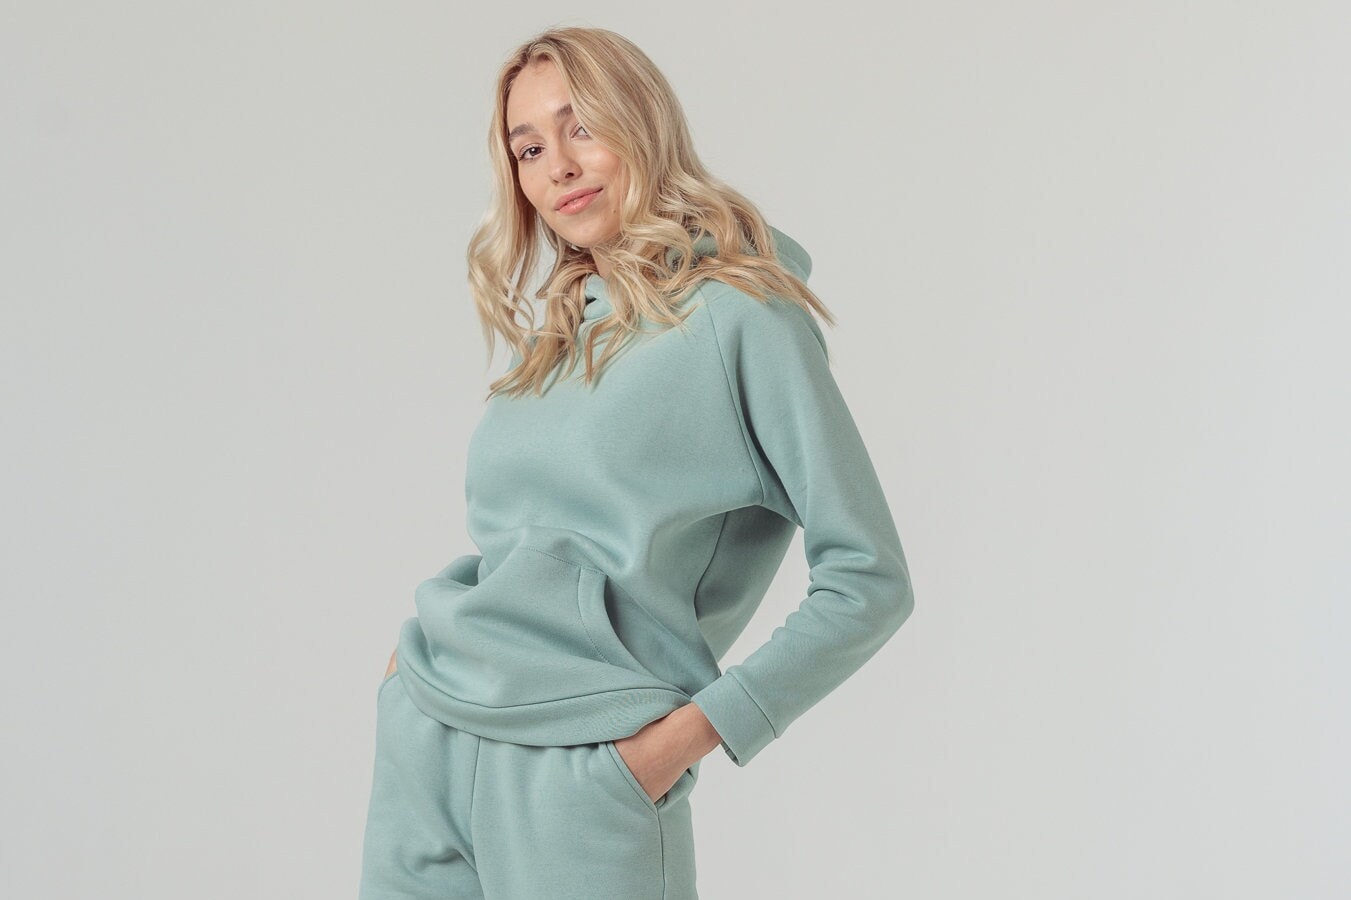 Ava Damen Kapuzenpullover Bio-Baumwolle Mit Taschen Home Wear Outdoor Wanderbekleidung Lounge Trip von BalticBloom